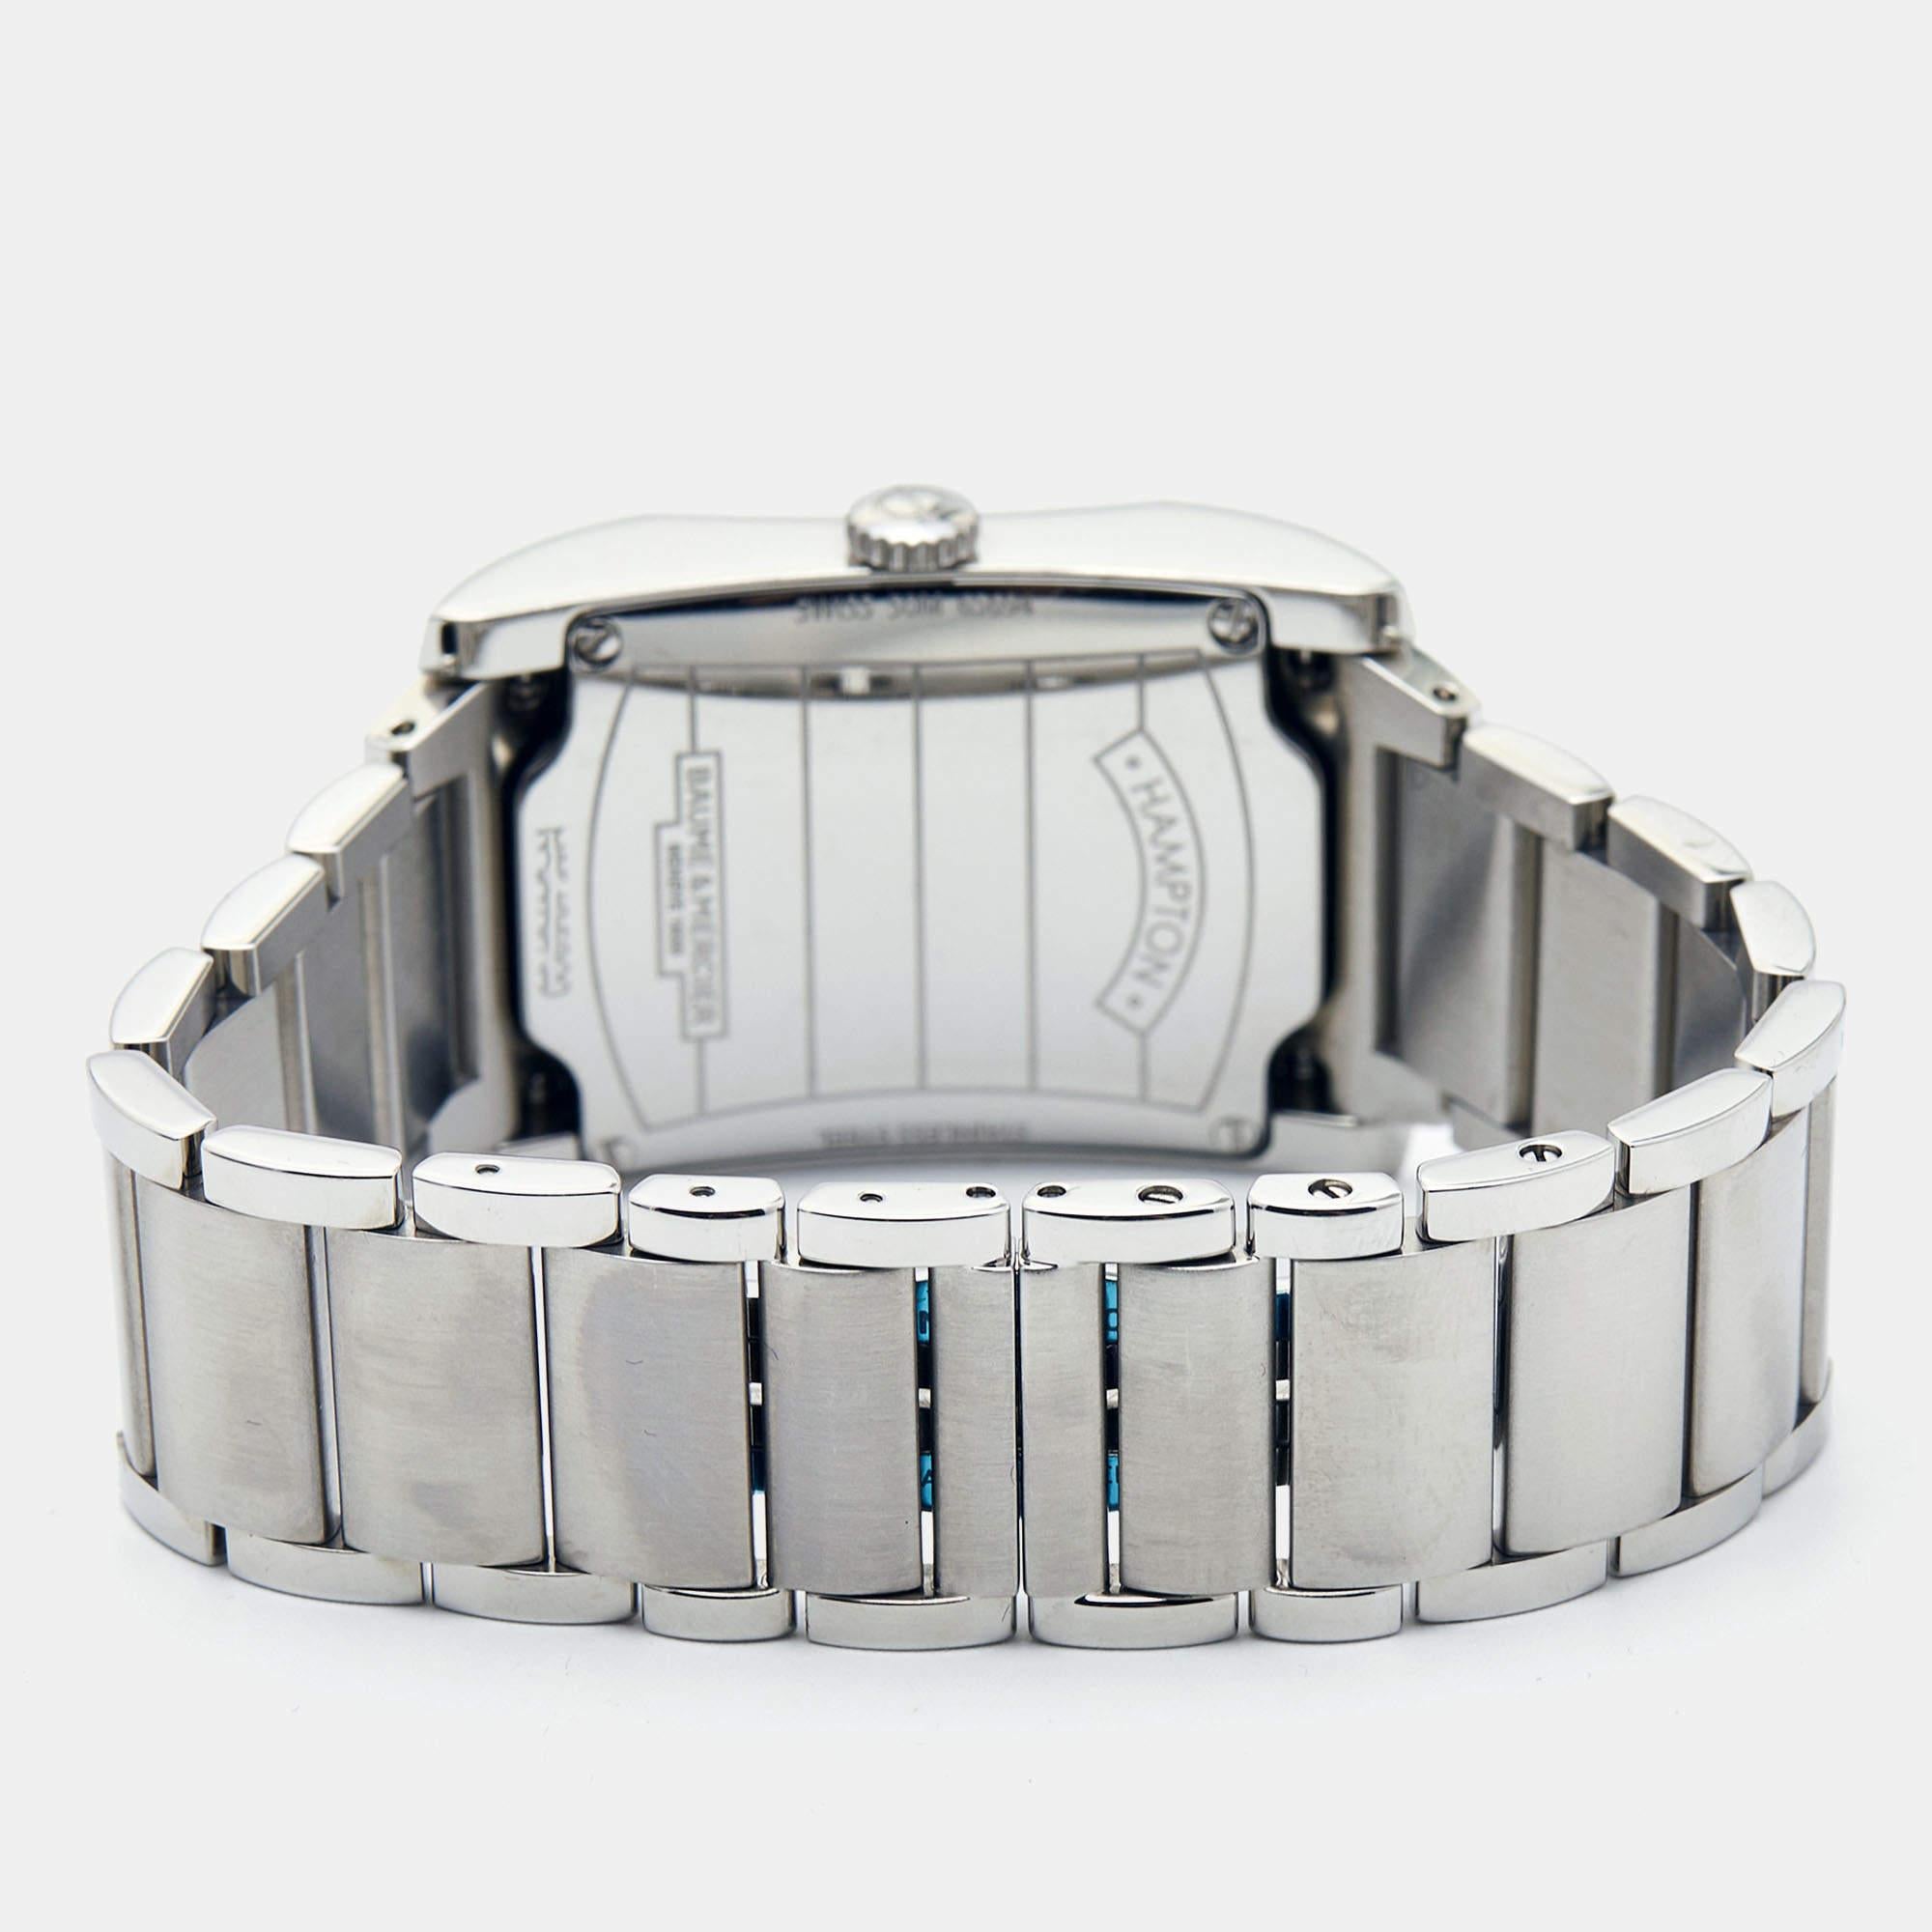 Améliorez votre look de tous les jours avec cette exquise pièce d'horlogerie Baume & Mercier Hamptons. La montre est fabriquée en acier inoxydable et arbore des diamants sur la lunette. Le cadran noir est orné d'index en chiffres arabes et d'un